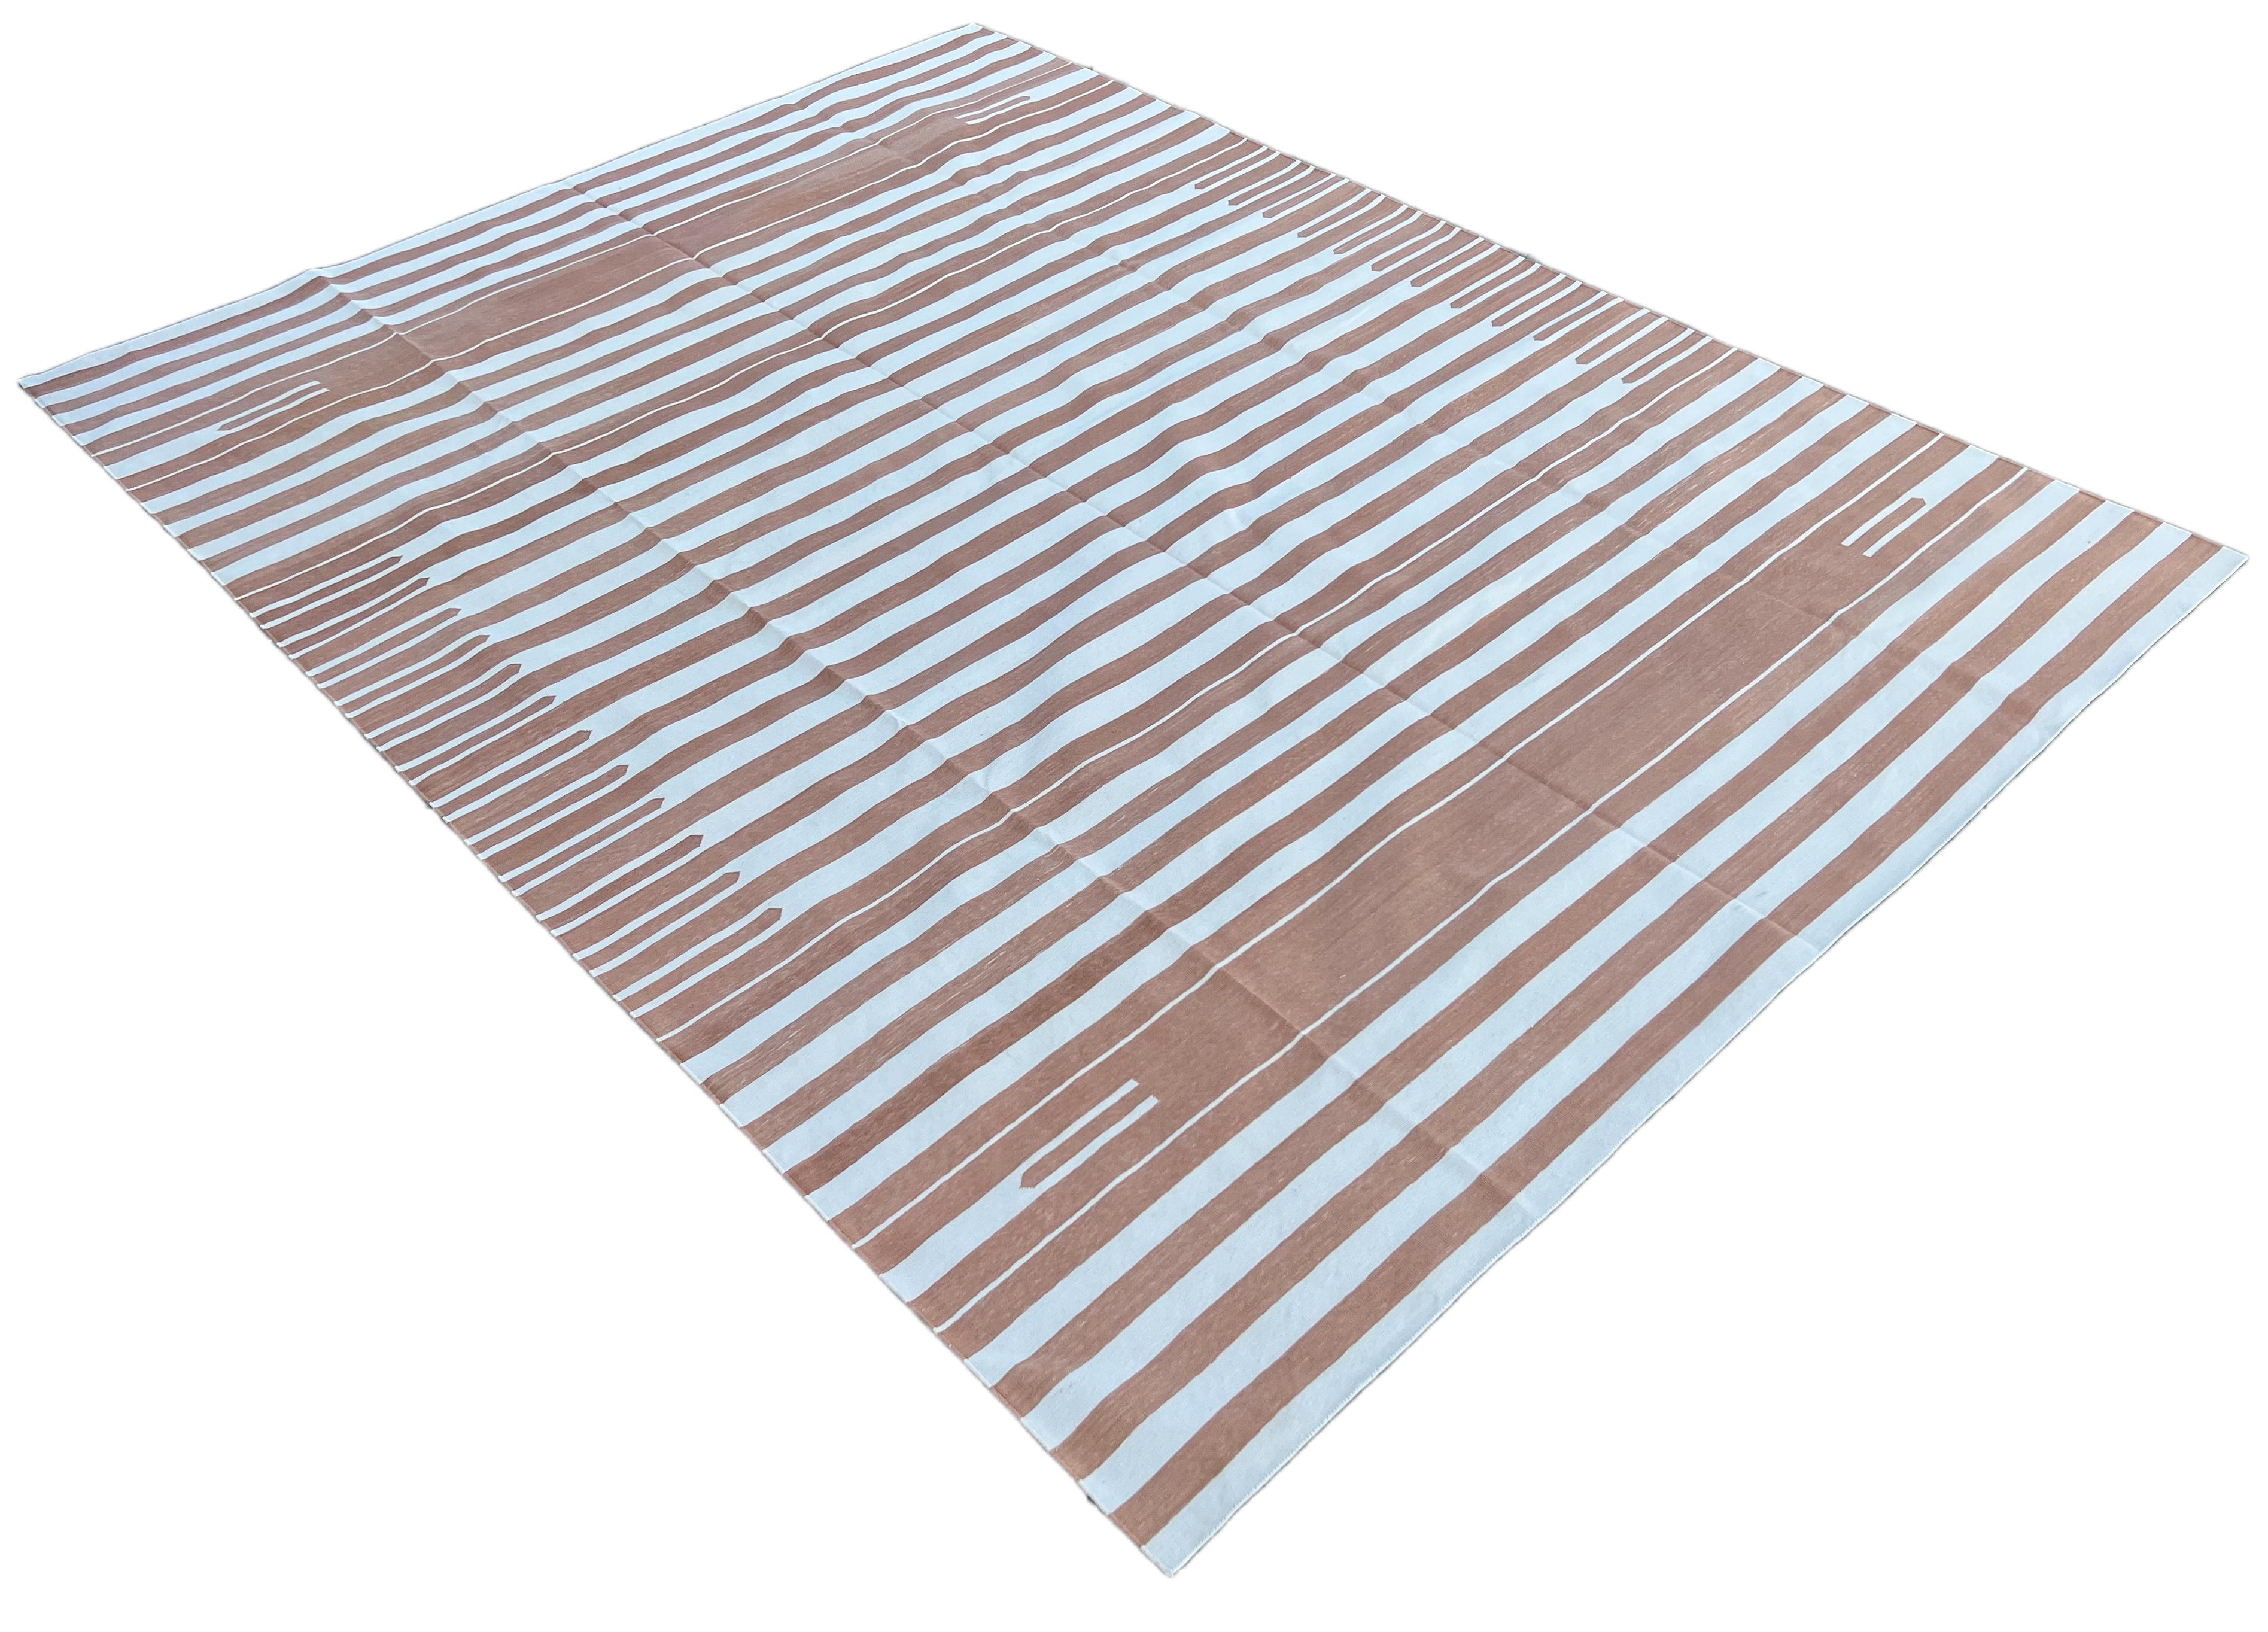 Baumwolle pflanzlich gefärbt Tan und weiß oben unten gestreift indischen Dhurrie Teppich-9'x12' 
Diese speziellen flachgewebten Dhurries werden aus 15-fachem Garn aus 100% Baumwolle handgewebt. Aufgrund der speziellen Fertigungstechniken, die zur